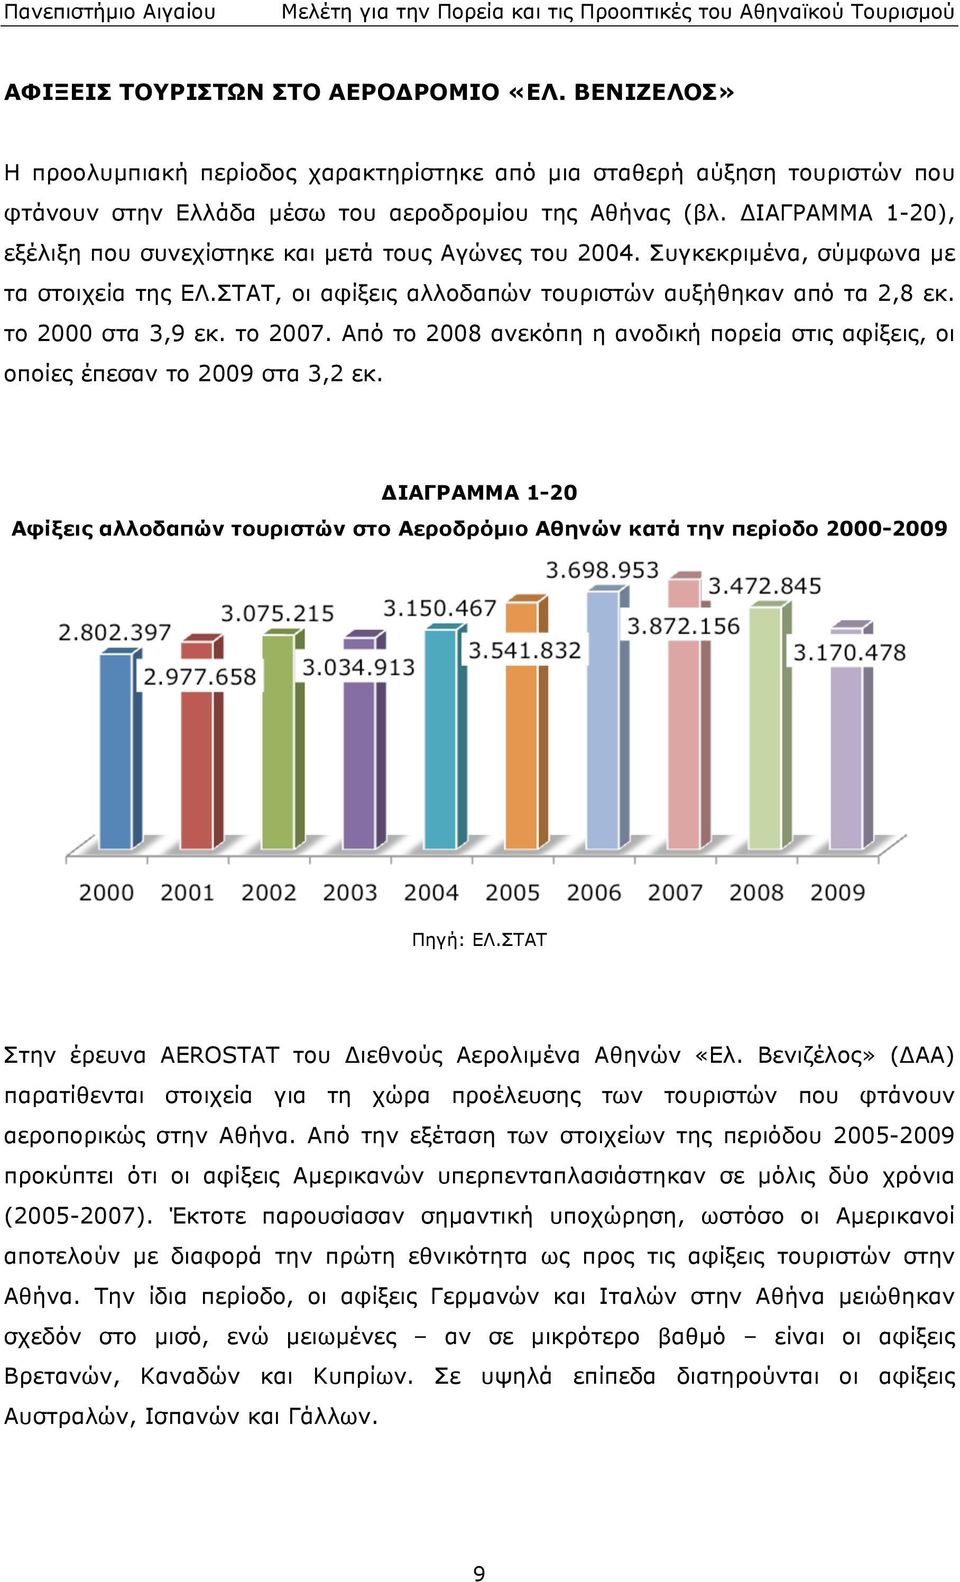 ανεκόπη η ανοδική πορεία στις αφίξεις, οι οποίες έπεσαν το 2009 στα 3,2 εκ ΔΙΑΓΡΑΜΜΑ 1-20 Αφίξεις αλλοδαπών τουριστών στο Αεροδρόµιο Αθηνών κατά την περίοδο 2000-2009 Πηγή: ΕΛΣΤΑΤ Στην έρευνα